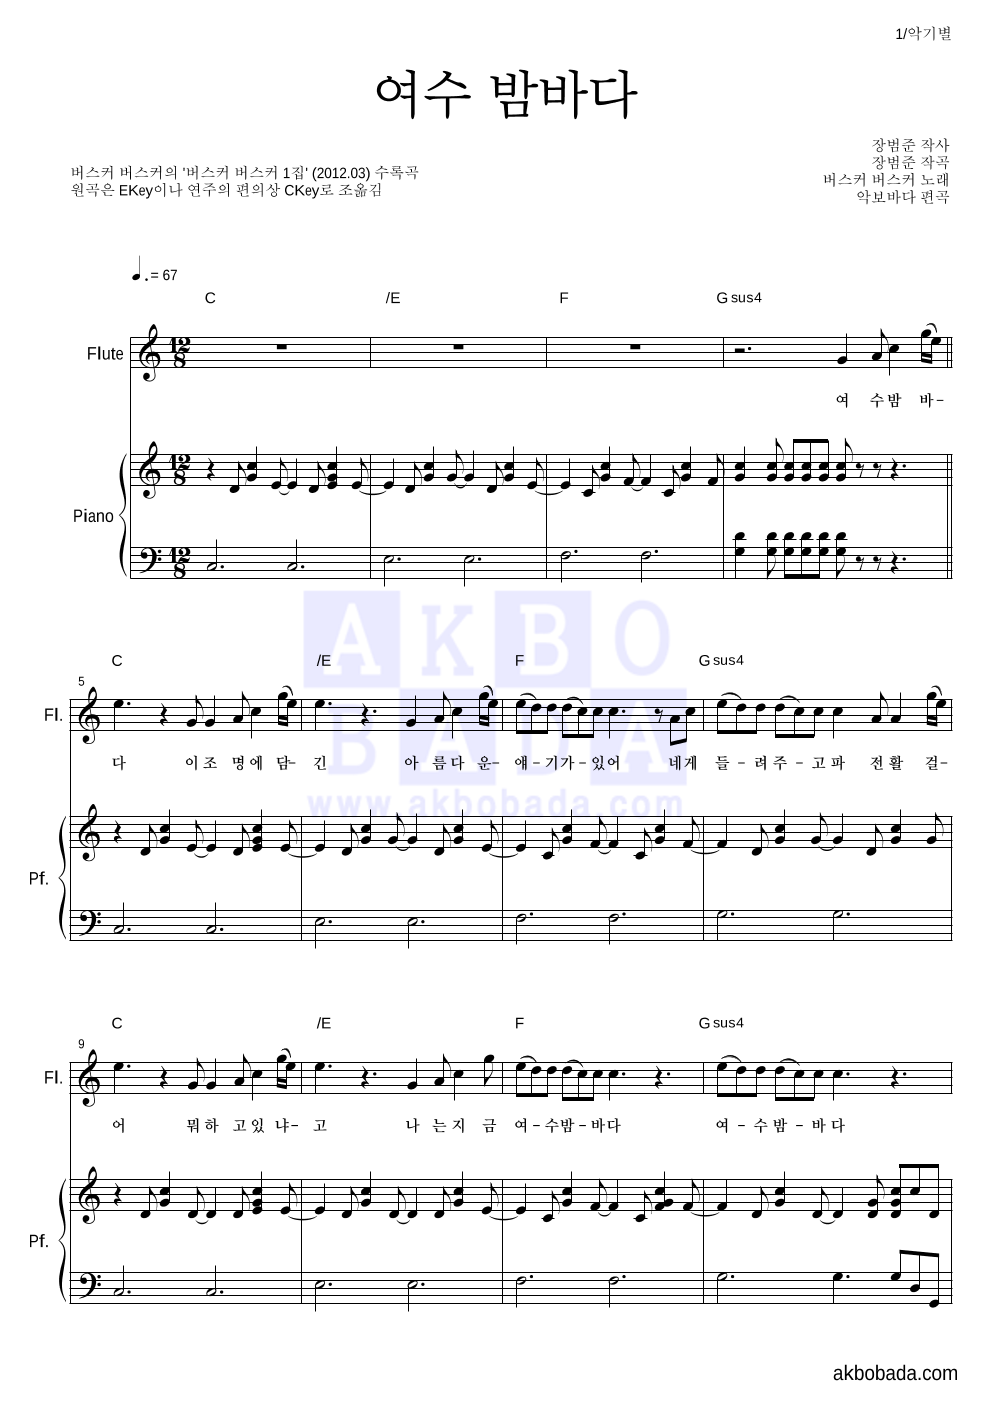 버스커 버스커 - 여수 밤바다 플룻&피아노 악보 